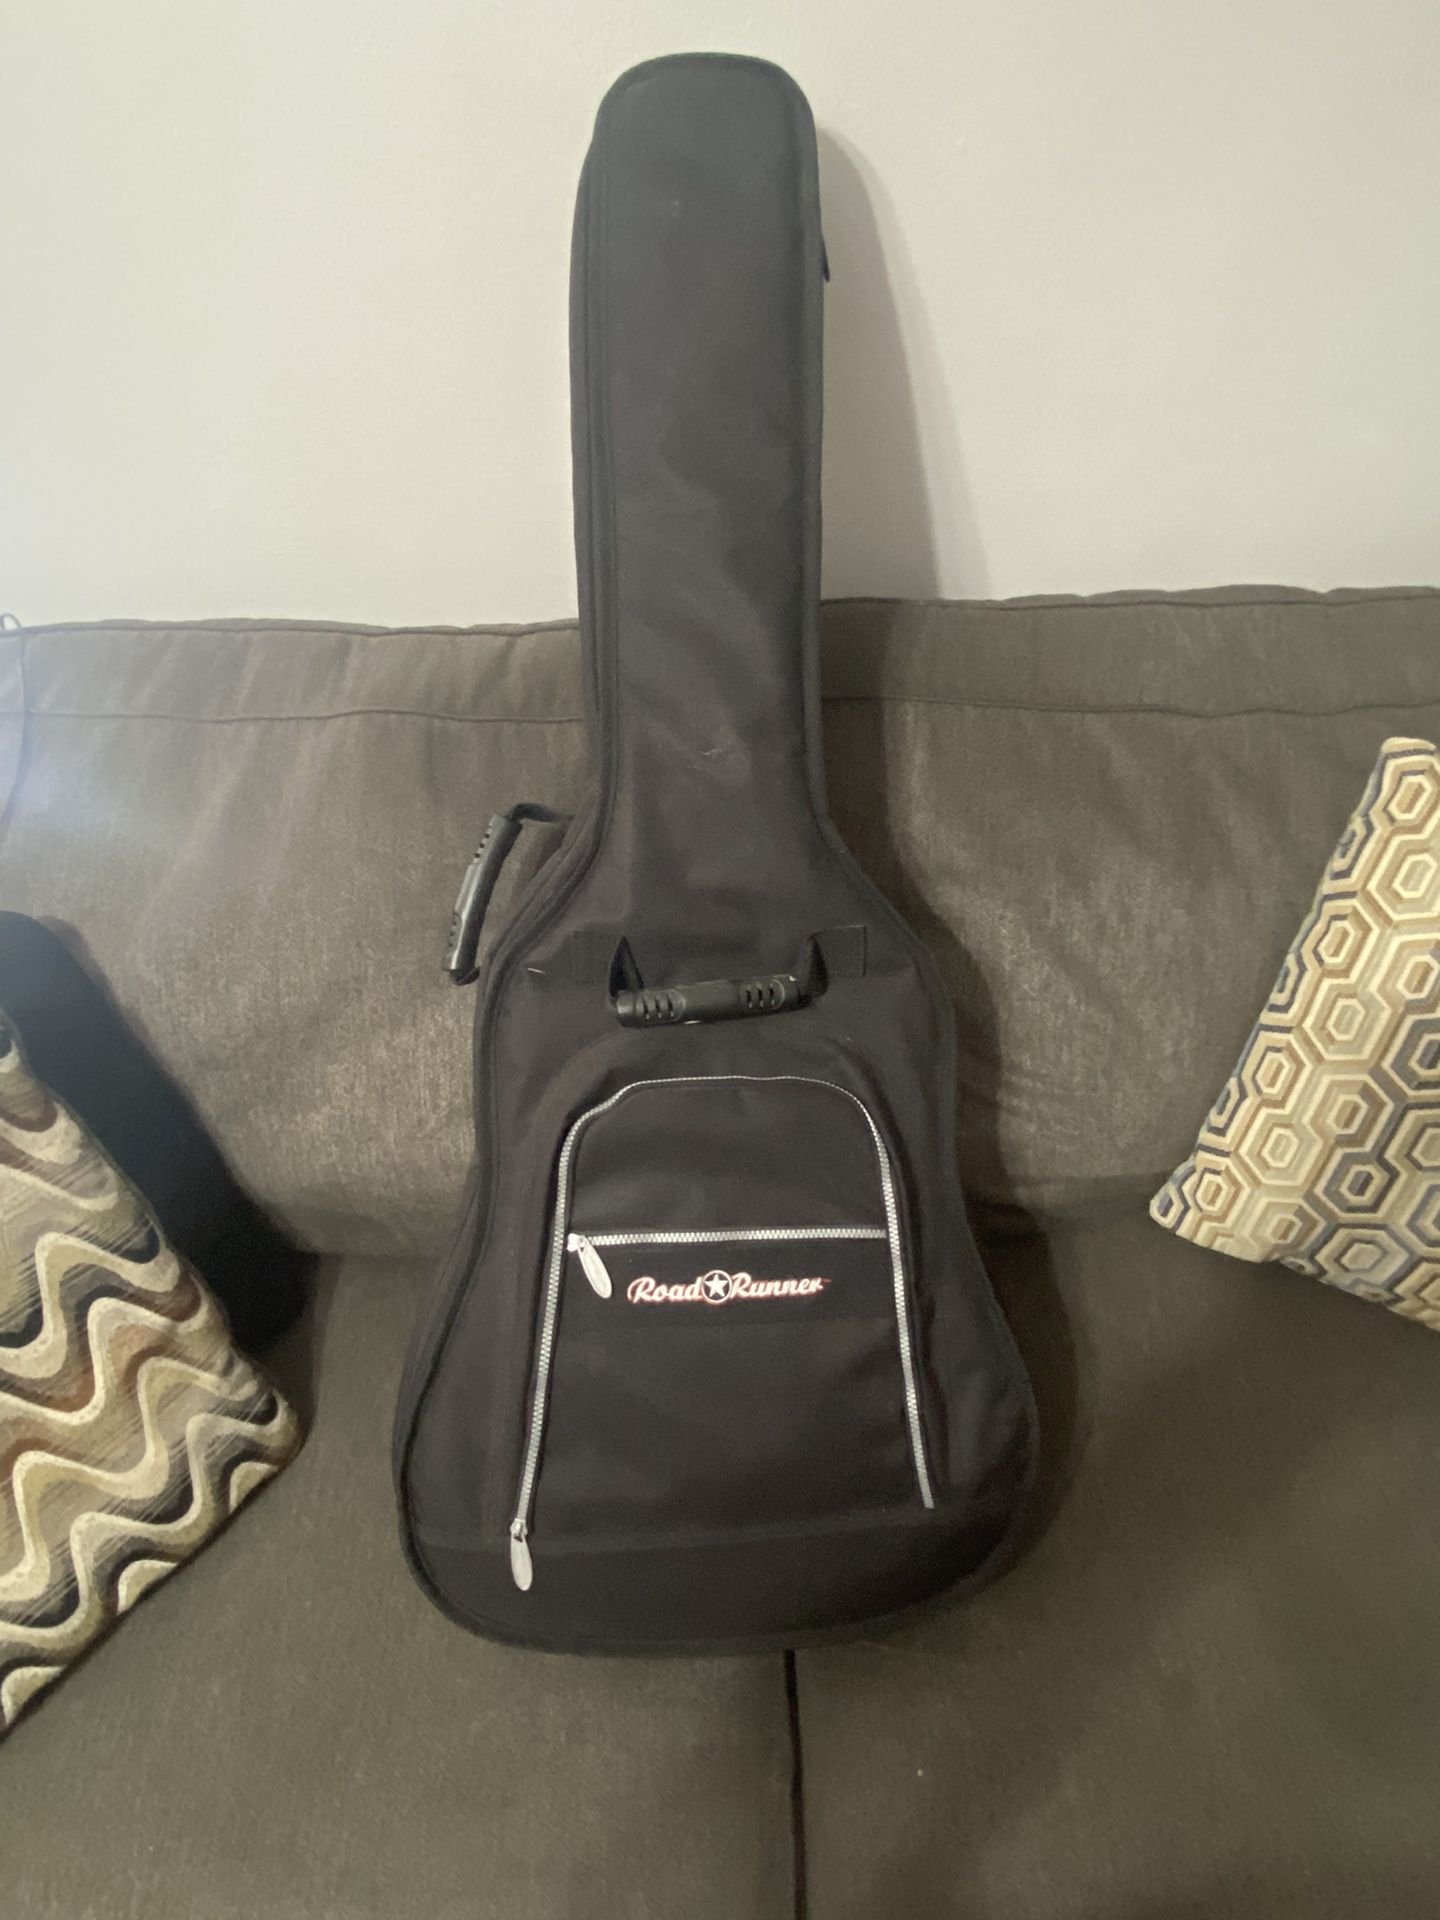 Basic Guitar With Roadrunner Case